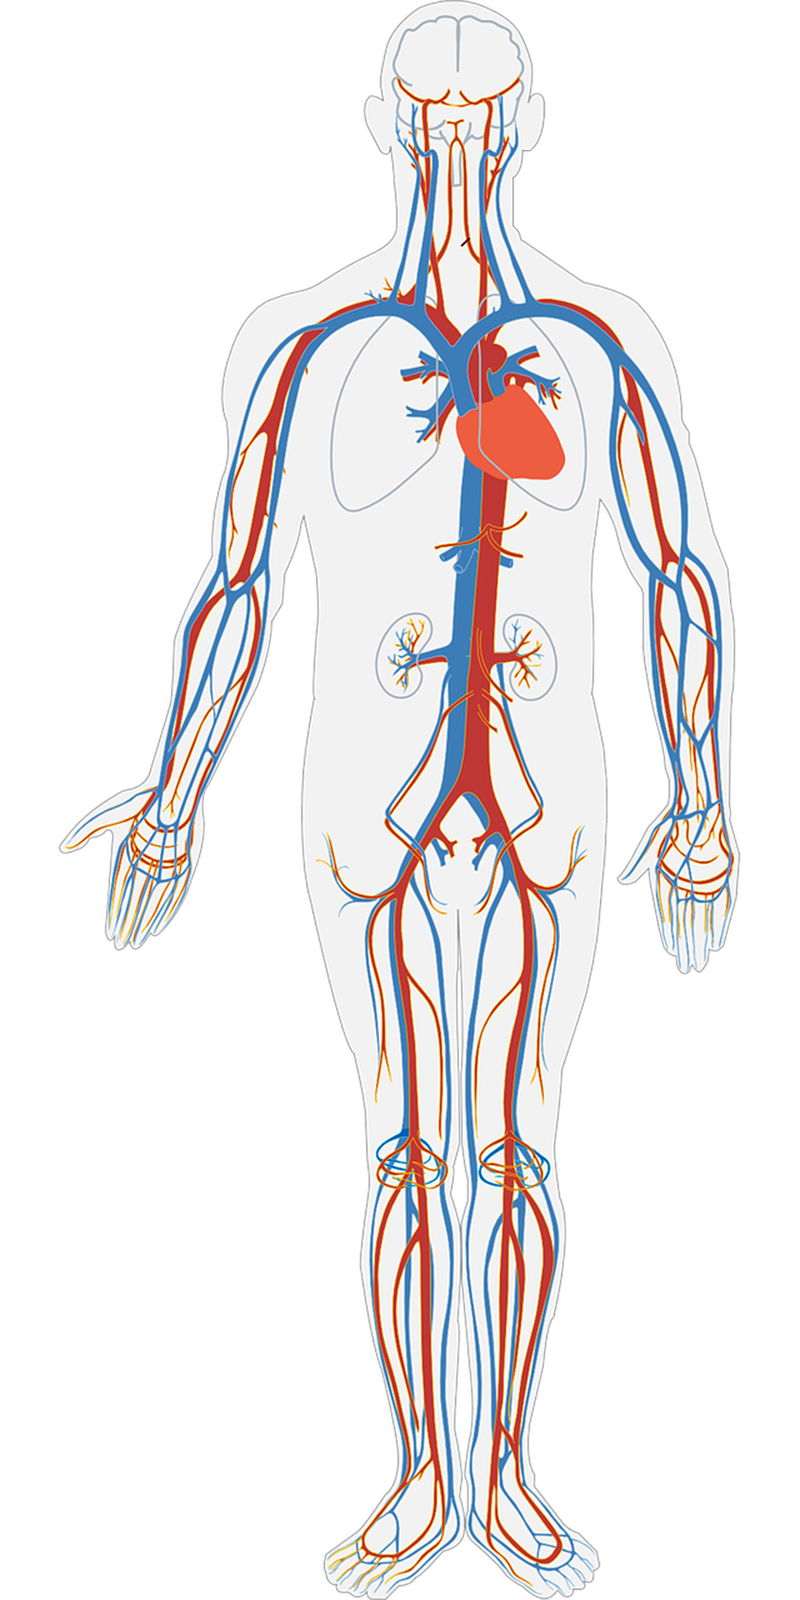 Rysunek przedstawia sylwetkę człowieka. Zaznaczony został układ żylny w ciele człowieka. Kolorem niebieskim zaznaczono główne żyły, kolorem czerwonym, tętnice. Tętnice o mniejszej średnicy niż aorta, za sprawą obecnych w ich ścianach warstw mięśni, regulują rozmieszczenie krwi w tkankach oraz wspomagają pracę serca, przepychając krew do dalszych odcinków naczyń. Krew powracająca do serca żyłami z obwodu ciała, w niektórych jego partiach transportowana jest do góry, np. krew płynąca do serca z kończyn dolnych. W tłoczeniu krwi w jedną stronę – ku sercu – pomagają zastawki żylne, siła ssąca przedsionków oraz mięśnie międzyżebrowe podczas wdechu. Układ żylny składa się z żył, które odprowadzają krew z naczyń włosowatych do przedsionków serca. Jest układ niskociśnieniowym o małym oporze i dużej podatności. Naczynia żylne są około 20 razy bardziej podatne niż tętnice. Ze względu na większą średnicę krew w żyłach płynie wolniej oraz przeciwnie do działania siły ciężkości. Dlatego posiadają zastawki, które uniemożliwiają cofanie się krwi. Przepływ krwi możliwy jest również dzięki pompie mięśniowej mięśni szkieletowych. Żyły krążenia płucnego (małego) odprowadzają obustronnie krew z wnęk płuc i uchodzą do lewego przedsionka serca poniżej przebiegu tętnic płucnych. Z każdej wnęki biegną dwie żyły płucne górna i dolna. Prowadzą one utlenowaną w płucach krew i nie mają zastawek. W większości przypadków żyły towarzyszą tętnicom. Krew spływa do serca przez żyłę główną górną, która powstaje z połączenia dwóch żył ramienno‑głowowych, a te z kolei z połączenia żył podobojczykowych i szyjnych oraz żyłę główną dolną biegnącą na tylnej ścianie tułowia po prawej stronie od kręgosłupa. Żyła główna dolna powstaje z połączenia żył biodrowych wspólnych. Układ żylny kończyn dolnych, składa się z żył powierzchownych, głębokich i łączących. W żyłach głębokich znajduje się 90 % powrotu żylnego kończyn dolnych, towarzyszą one tętnicom. Żyły powierzchowne uchodzą do żyły odpiszczelowej mieszczącej się po przyśrodkowej stronie kończyny dolnej i żyły odstrzałkowej. Żyła odpiszczelowa uchodzi do żyły udowej w okolicy pachwinowej, natomiast odstrzałkowa do żyły podkolanowej. Odmiennością jest też obecność układu wrotnego. To układ żylny przechodzącego w sieć naczyń włosowatych. W przypadku układu wrotnego wątroby jest to szczególnie żyła wrotna wątroby. Powstaje ona z połączenia żyły krezkowej górnej, żyły krezkowej dolnej oraz żyły śledzionowej. Ponadto na różnych wysokościach uchodzą do niej: żyła żołądkowa lewa, żyła żołądkowa prawa, żyła przedodźwiernikowa, żyła trzustkowo‑dwunastnicza górna tylna, żyła pęcherzykowa i żyła pępkowa. Obszar spływu krwi obejmuje cały przewód pokarmowy (od wpustu żołądka do odbytnicy). We wnęce wątroby żyła wrotna dzieli się na gałąź prawą i lewą, które następnie rozgałęziają się na coraz mniejsze naczynia włosowate. Z sieci naczyń włosowatych wątroby krew odpływa żyłami wątrobowymi do żyły głównej dolnej. Żyły układu wrotnego nie mają zastawek.